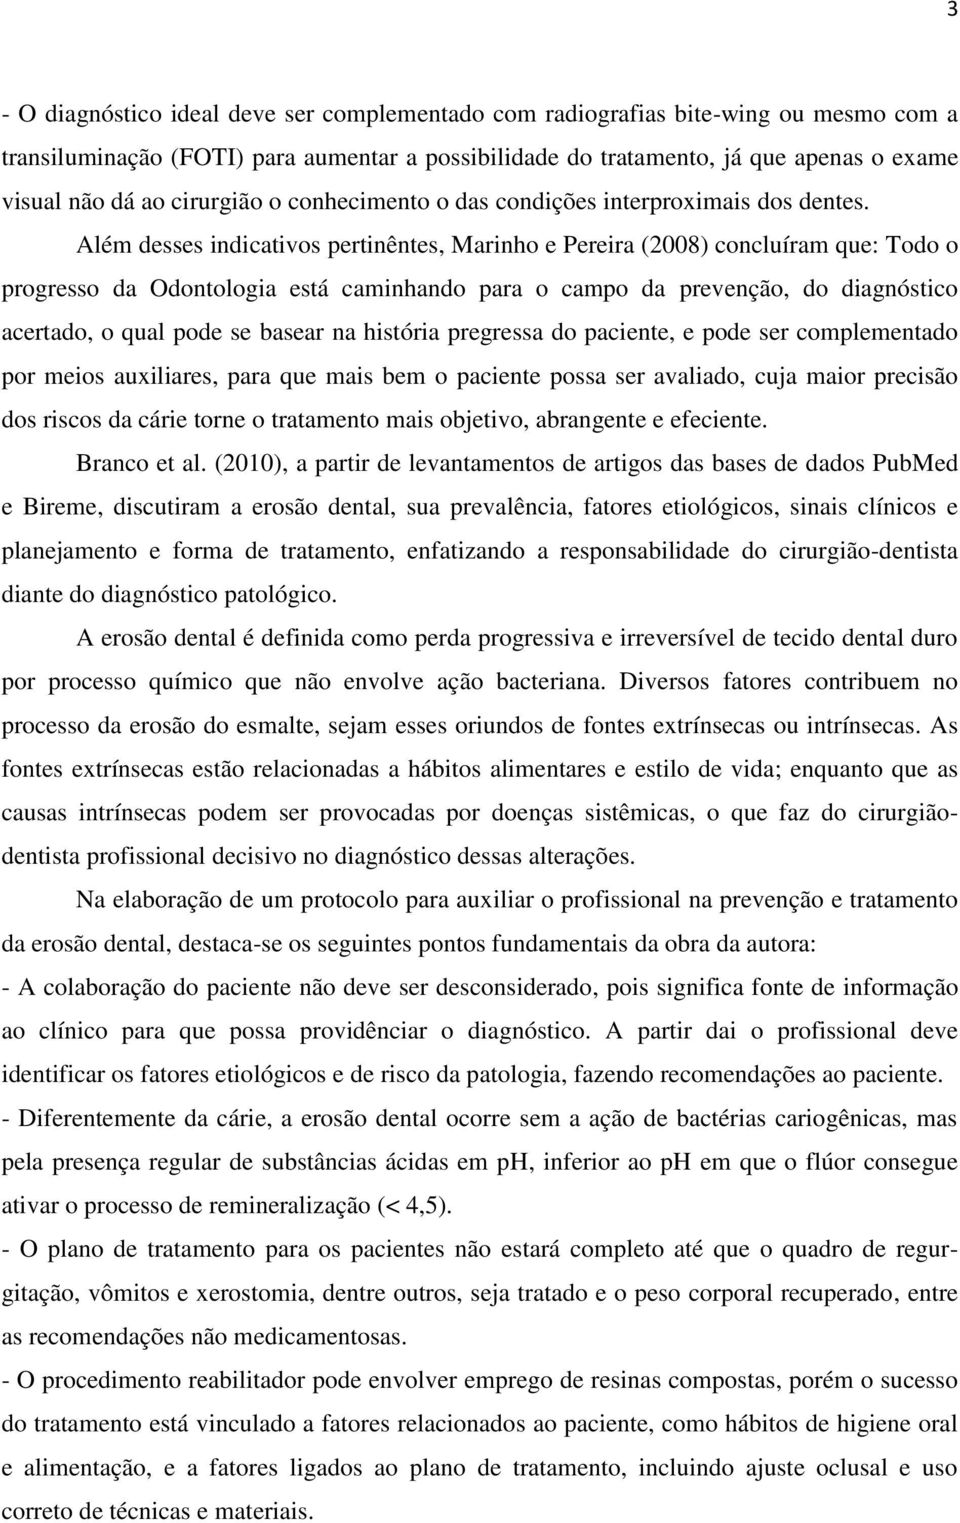 Além desses indicativos pertinêntes, Marinho e Pereira (2008) concluíram que: Todo o progresso da Odontologia está caminhando para o campo da prevenção, do diagnóstico acertado, o qual pode se basear